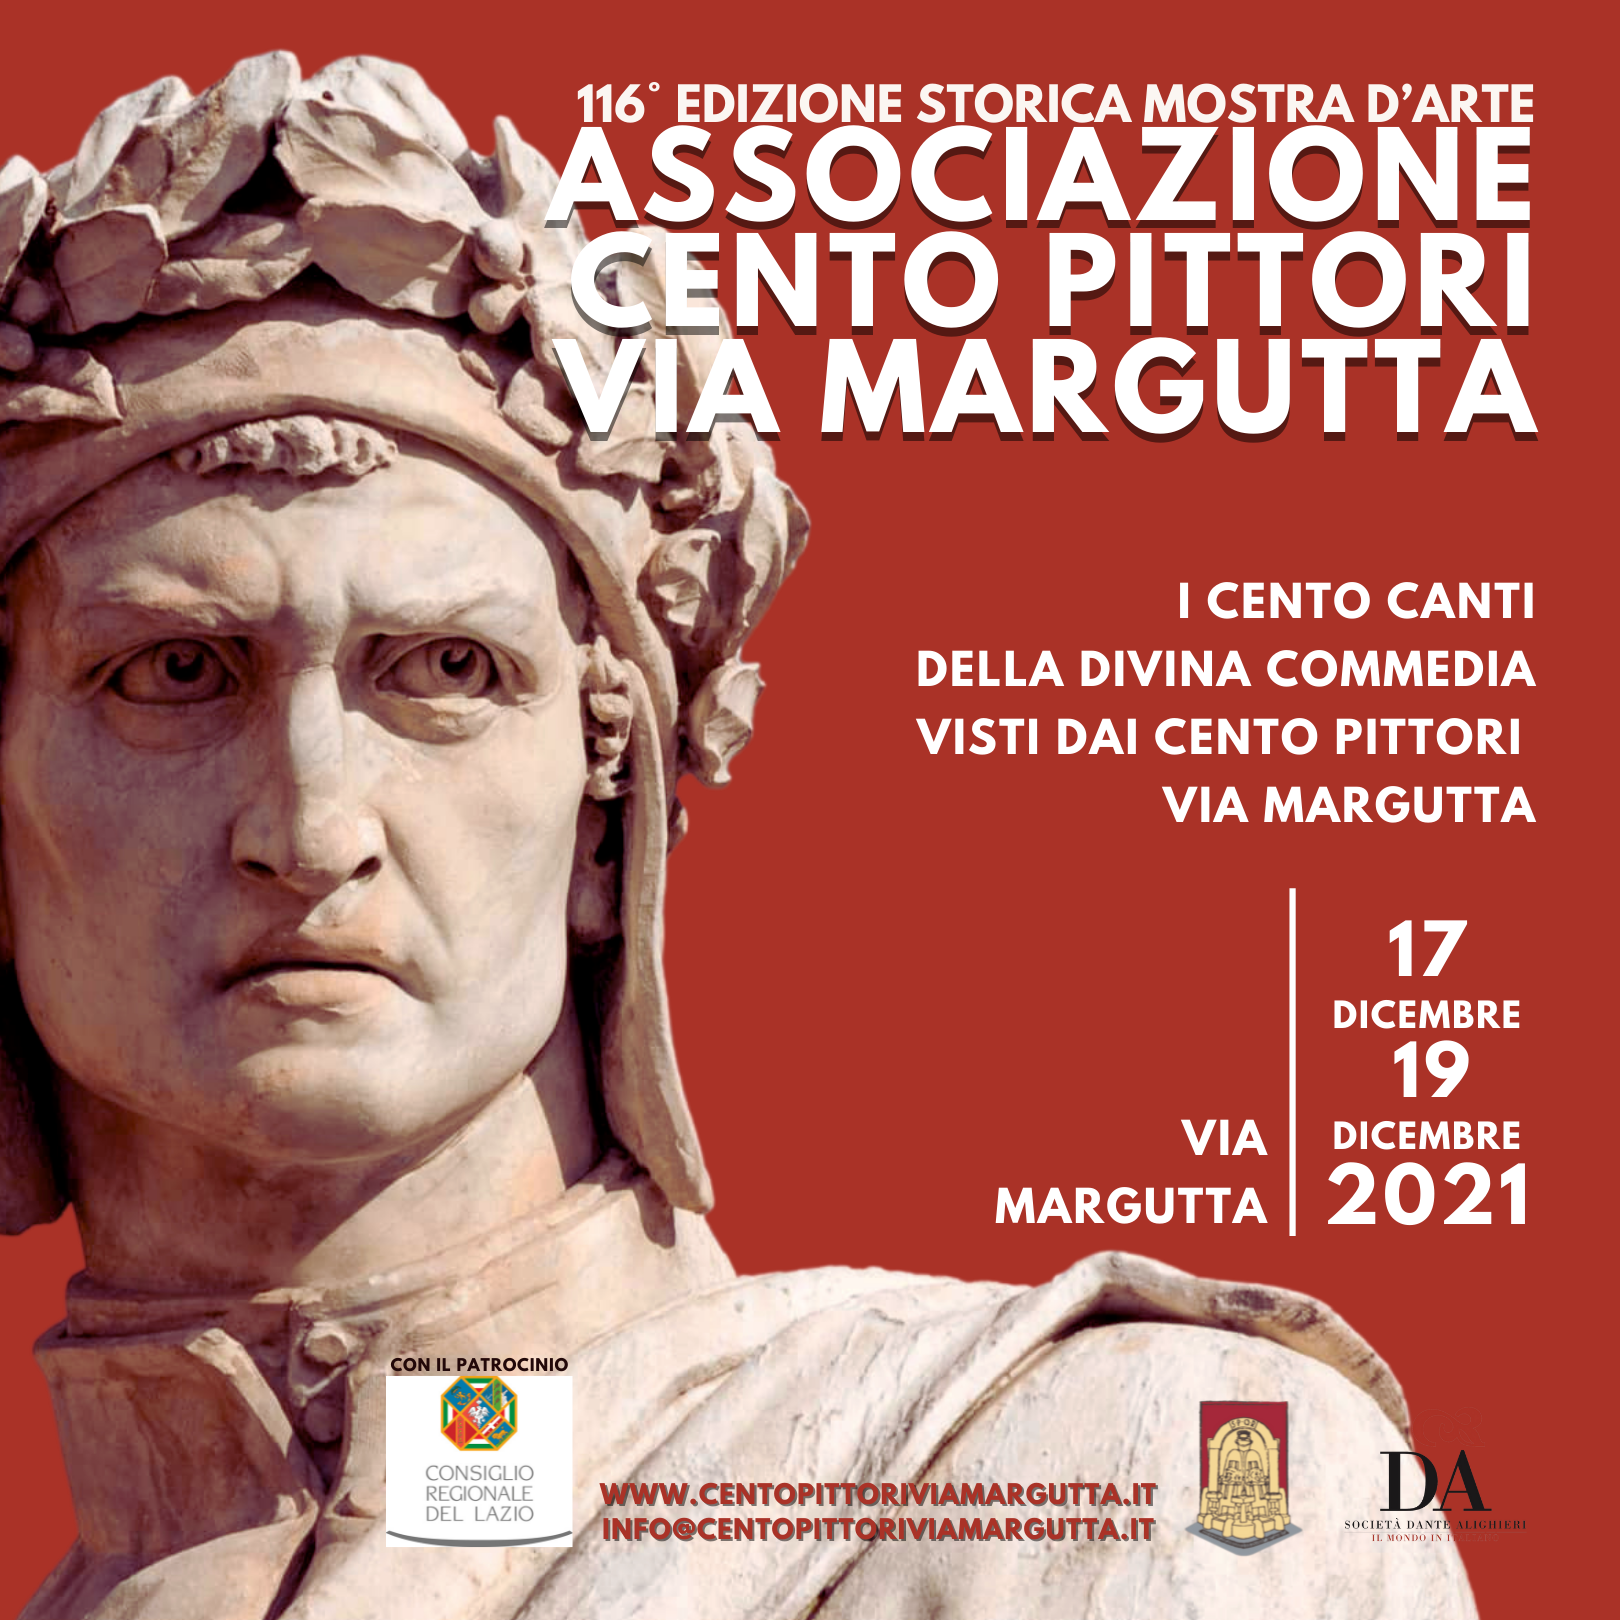 Via Margutta dal 17 al 19 dicembre 2021 - Mostra d'Arte dedicata alla Divina Commedia di Dante.